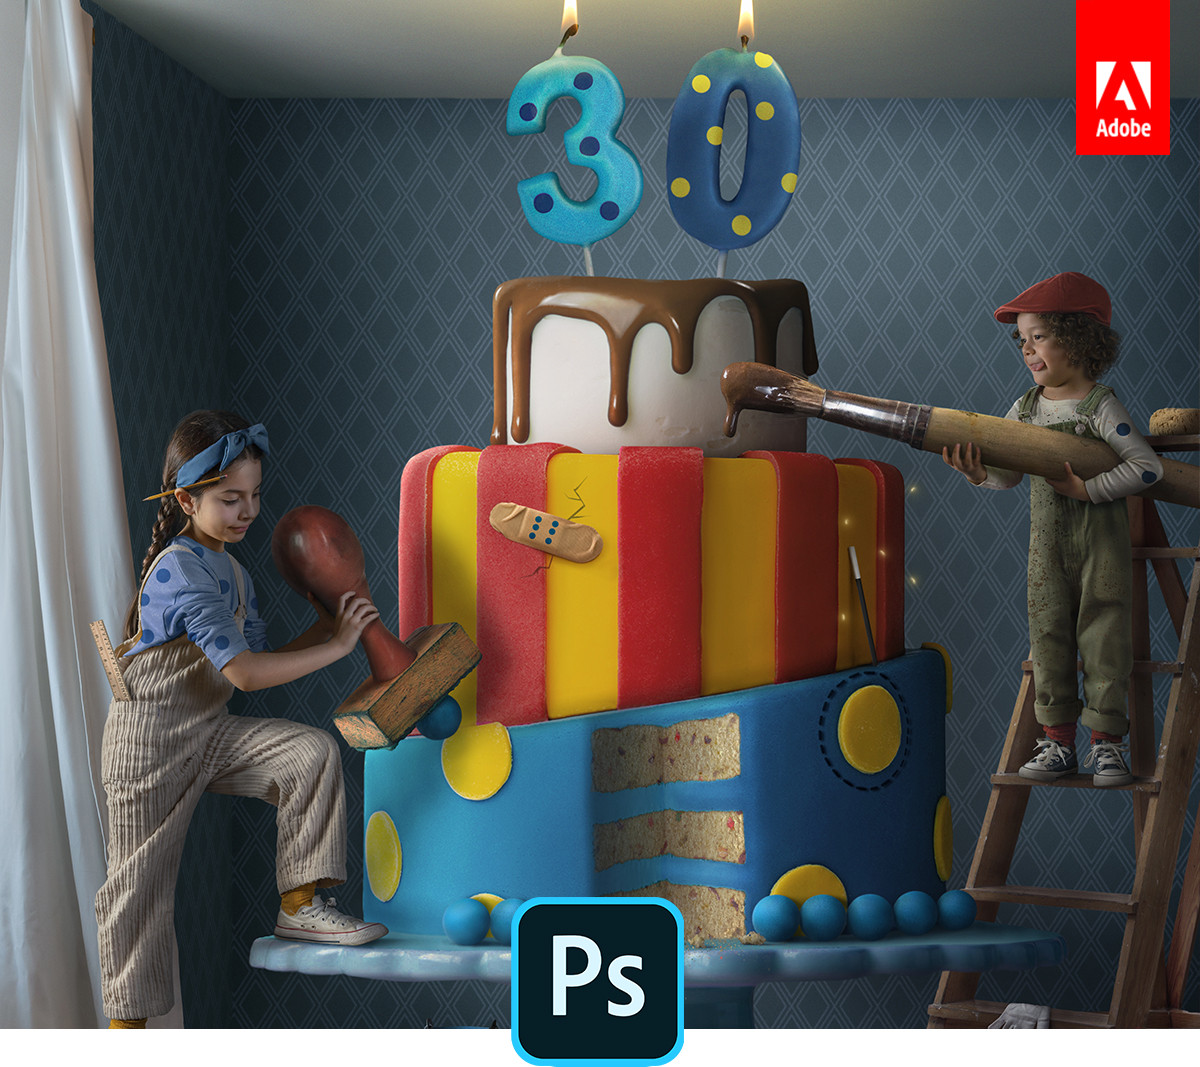 Adobe celebra el 30 aniversario de Photoshop con nuevas funciones de escritorio y dispositivos móviles